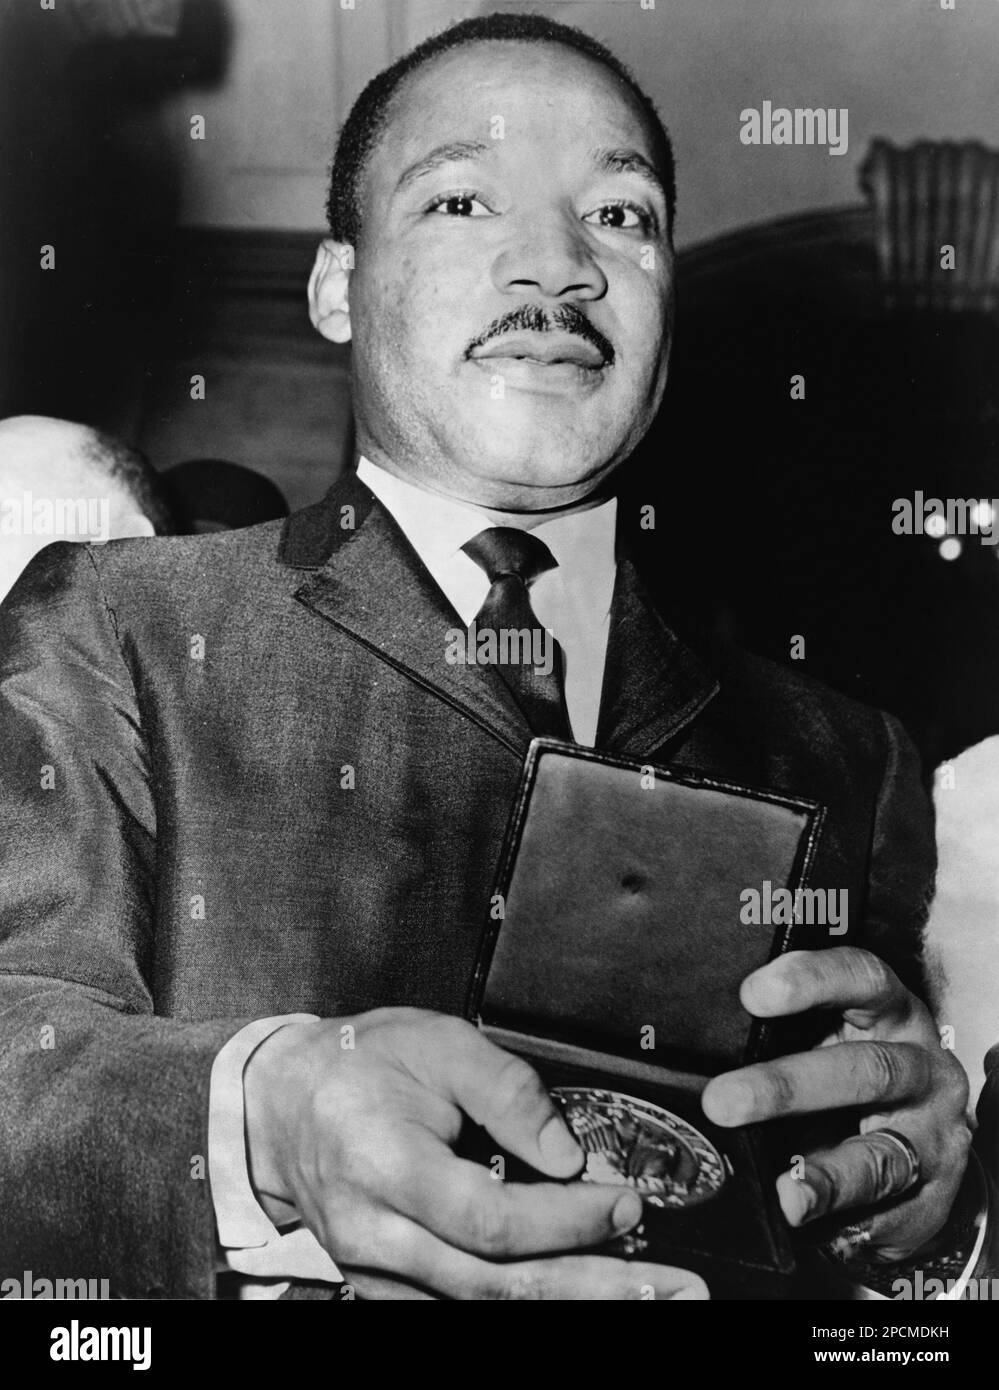 1964 , New York, USA: Il Rev. Americano Martin Luther King ( 1929 - 1968 ) che mostra il suo medaglione ricevuto dal sindaco Wagner di New York City . Telegramma mondiale & sole foto di Phil Stanziola . - Stati Uniti - USA - ritratto - ritratto - cravatta - cravatta - colletto - colletto - baffi - baffi - DIRITTI CIVILI --- NON PER USO PUBBLICITARIO ---- NON PER uso PUBBLICITARIO --- NON PER USO GADGET ---- Archivio GBB Foto Stock